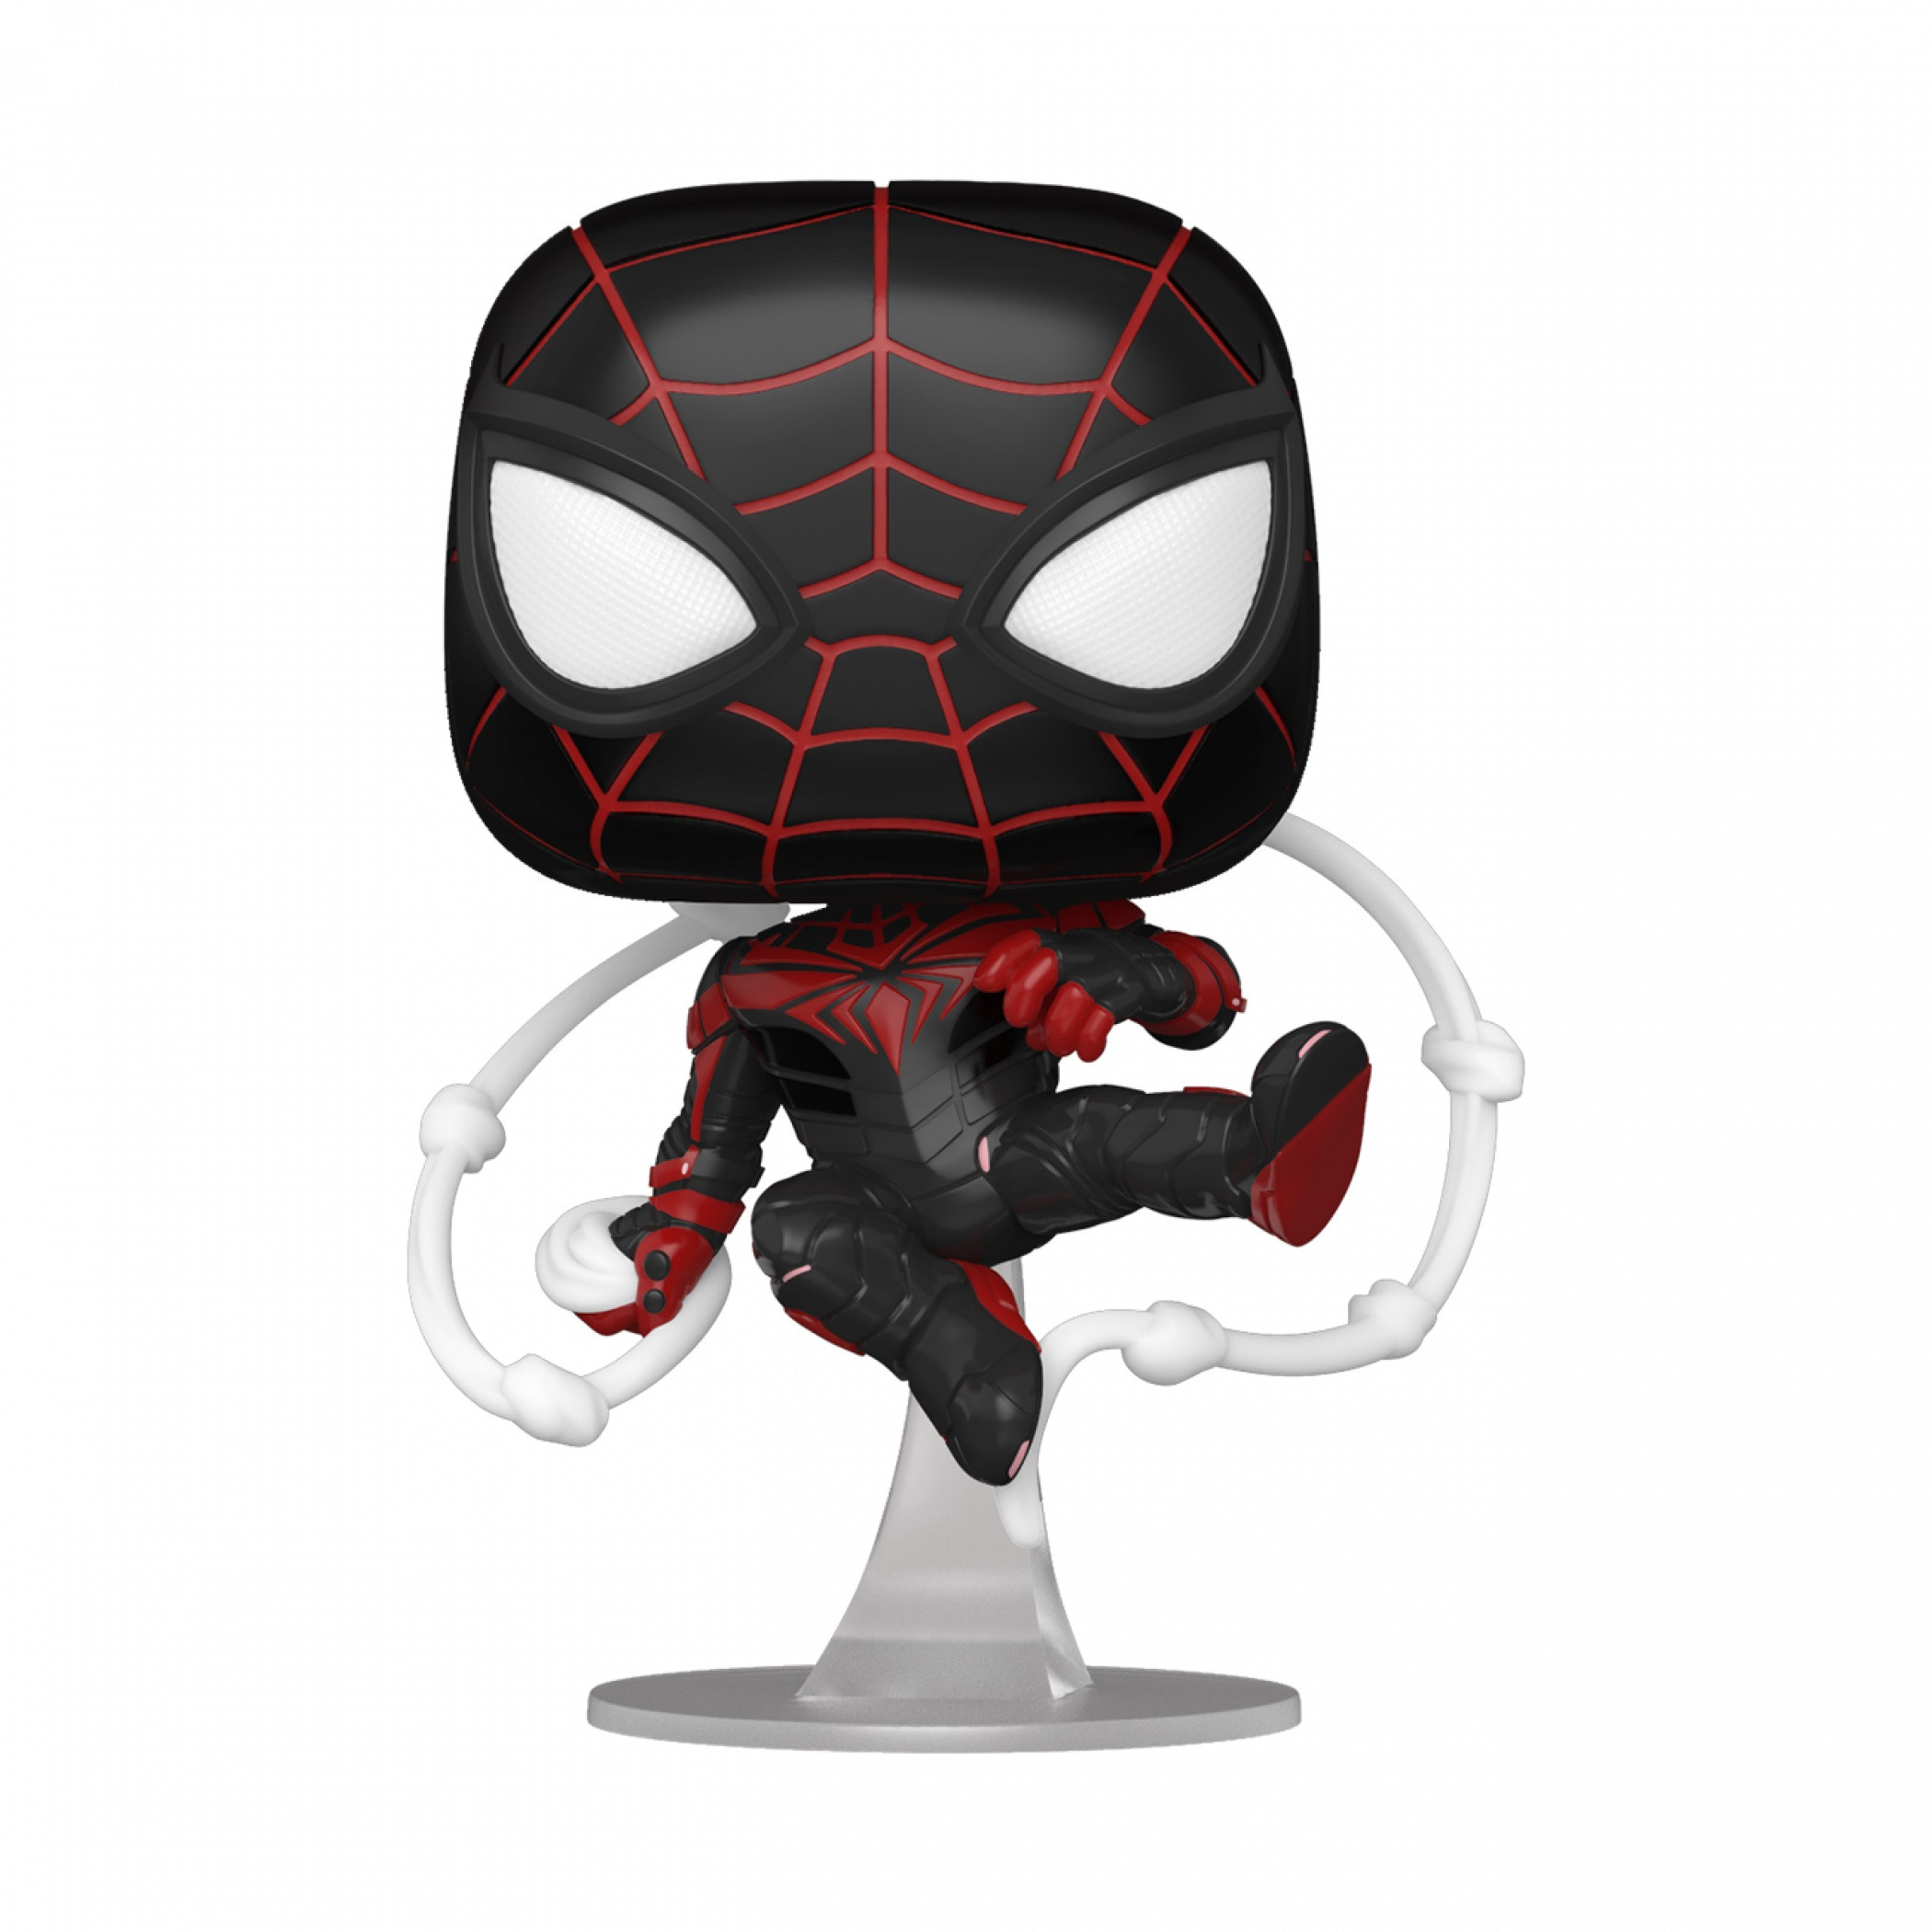 Spider-Man Miles Morales Advanced Tech Suit Funko Pop! Vinyl Figure